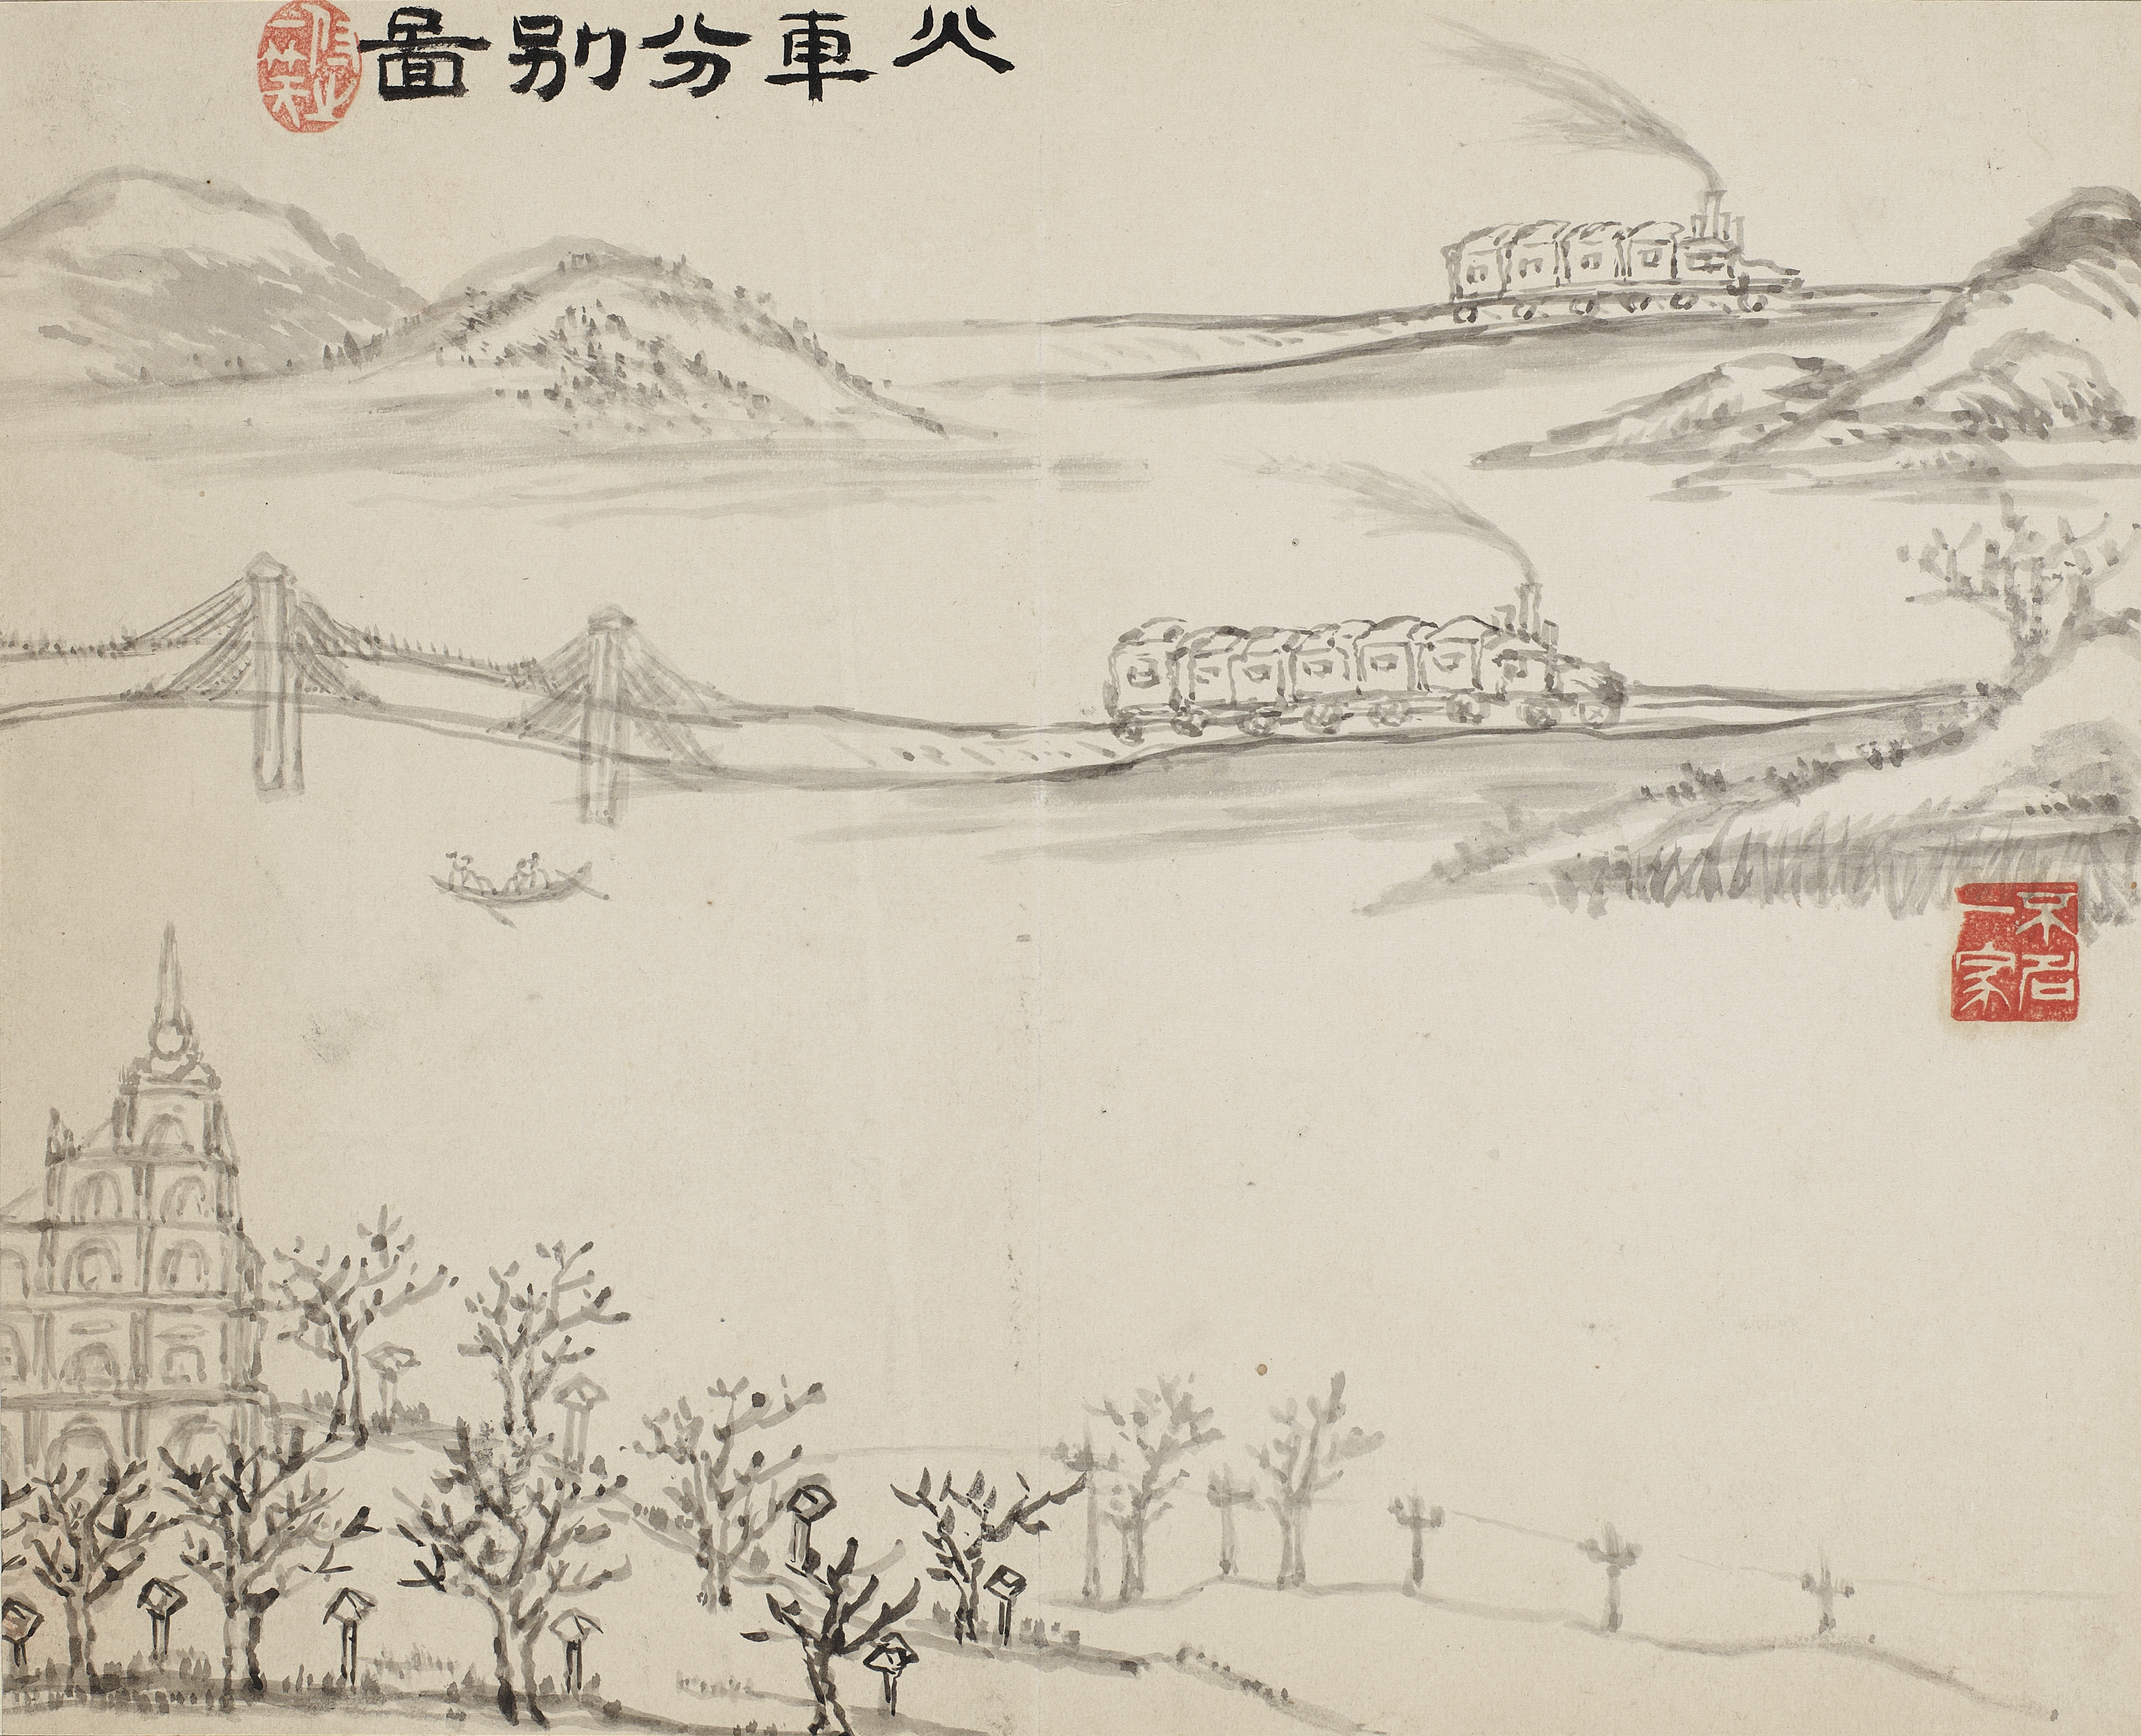 〈화차분별도〉, 청운 강진희, 1888, 종이에 수묵, 28cmx34cm, 간송미술관 ⓒ간송미술문화재단